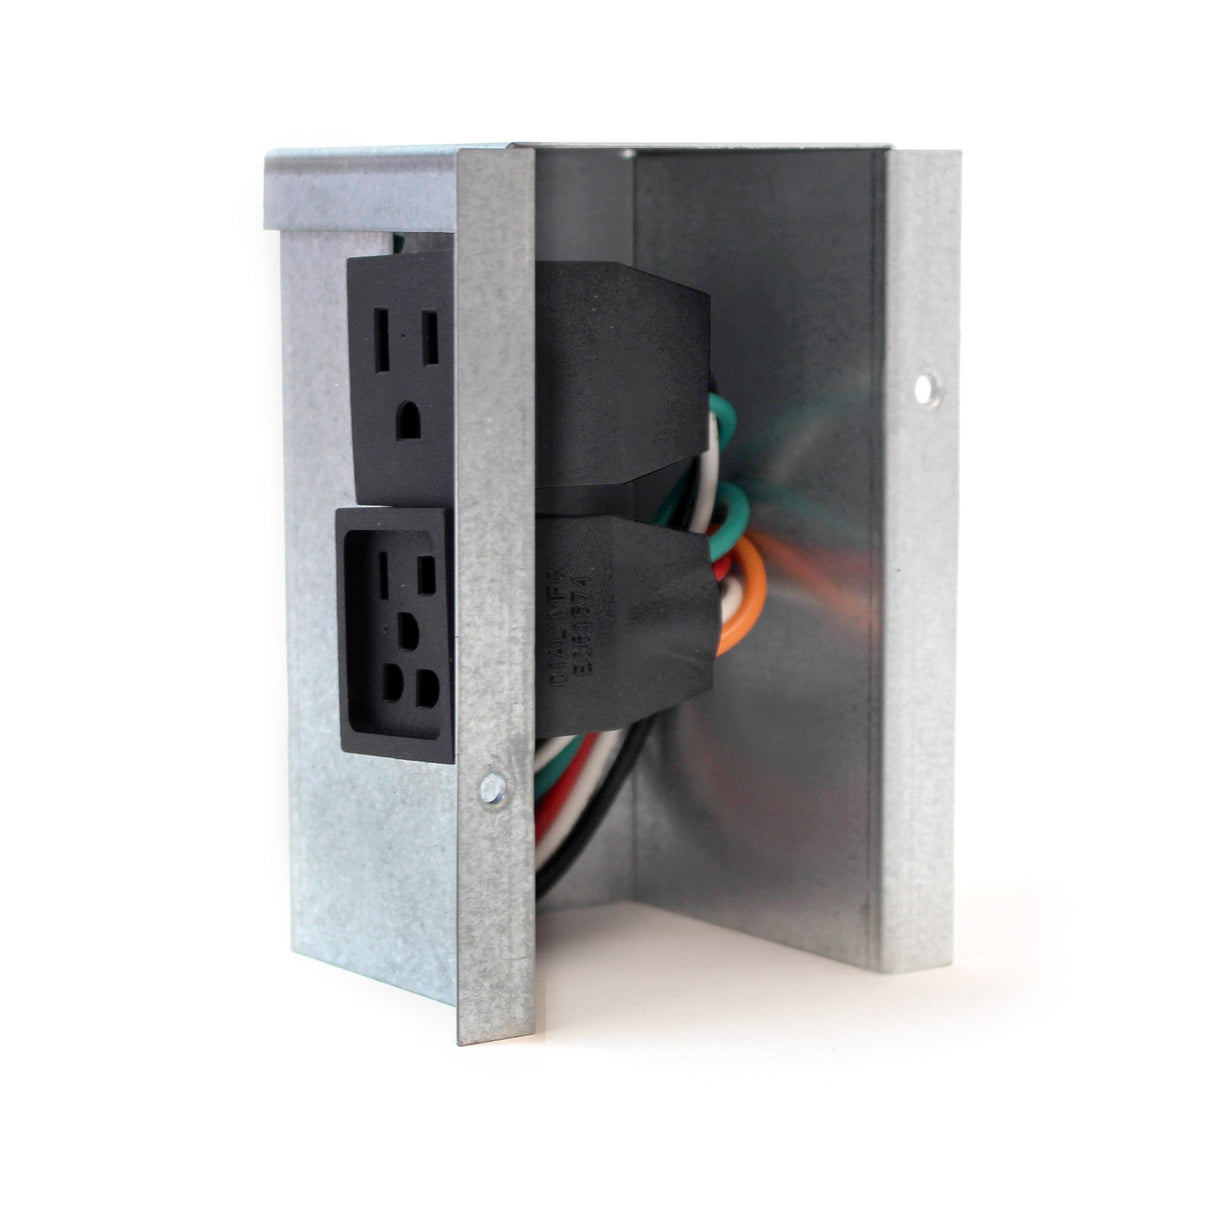 Caja de conexiones eléctricas interior de dial (kit de cableado de refrigerador de 230 V)